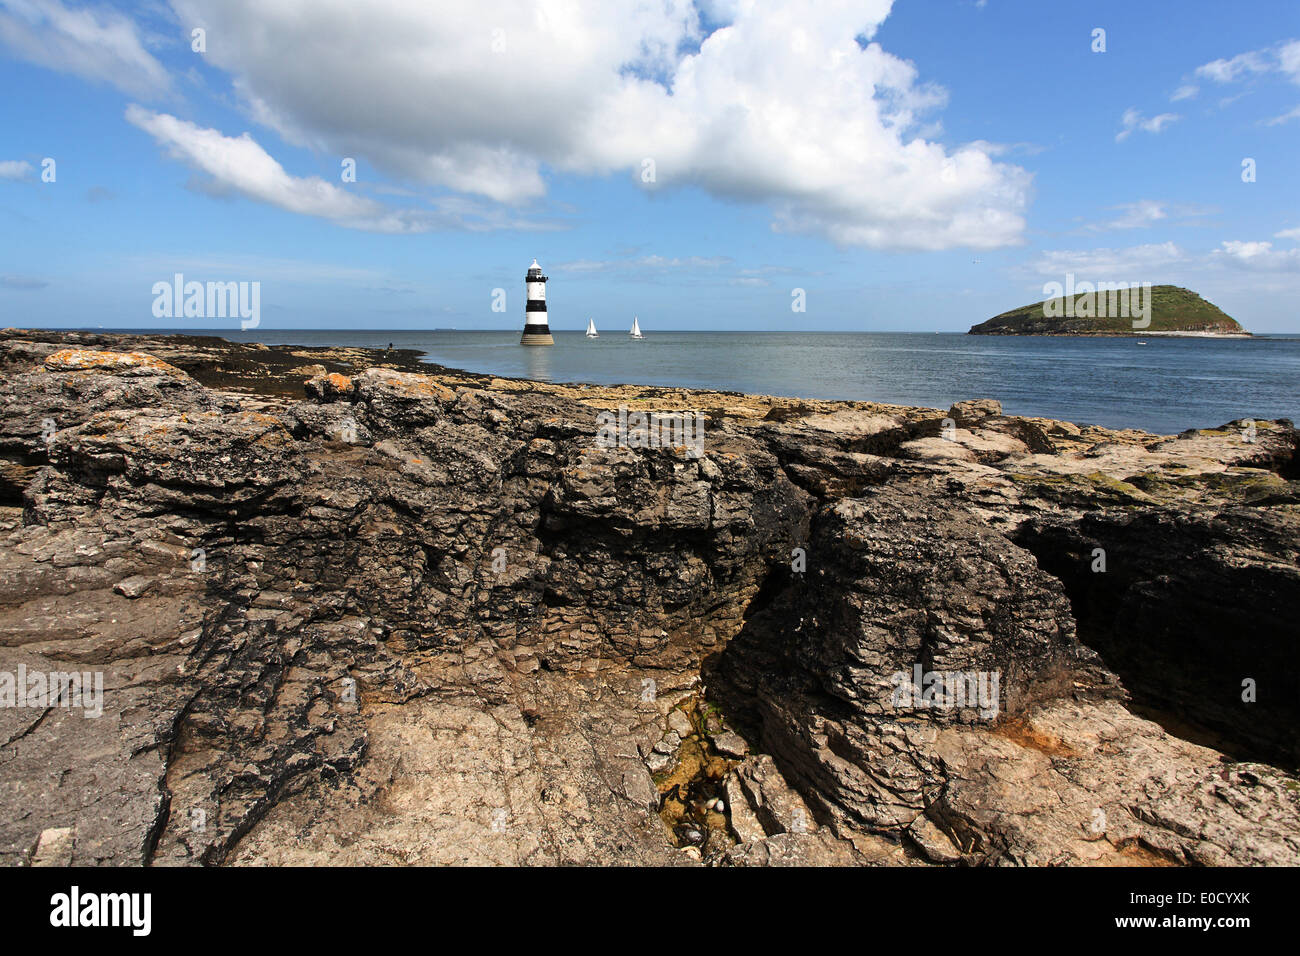 Le phare et l'Île Penmon macareux au nord-ouest de l'île d'Angesey, au nord du Pays de Galles, en Grande-Bretagne, en Europe Banque D'Images